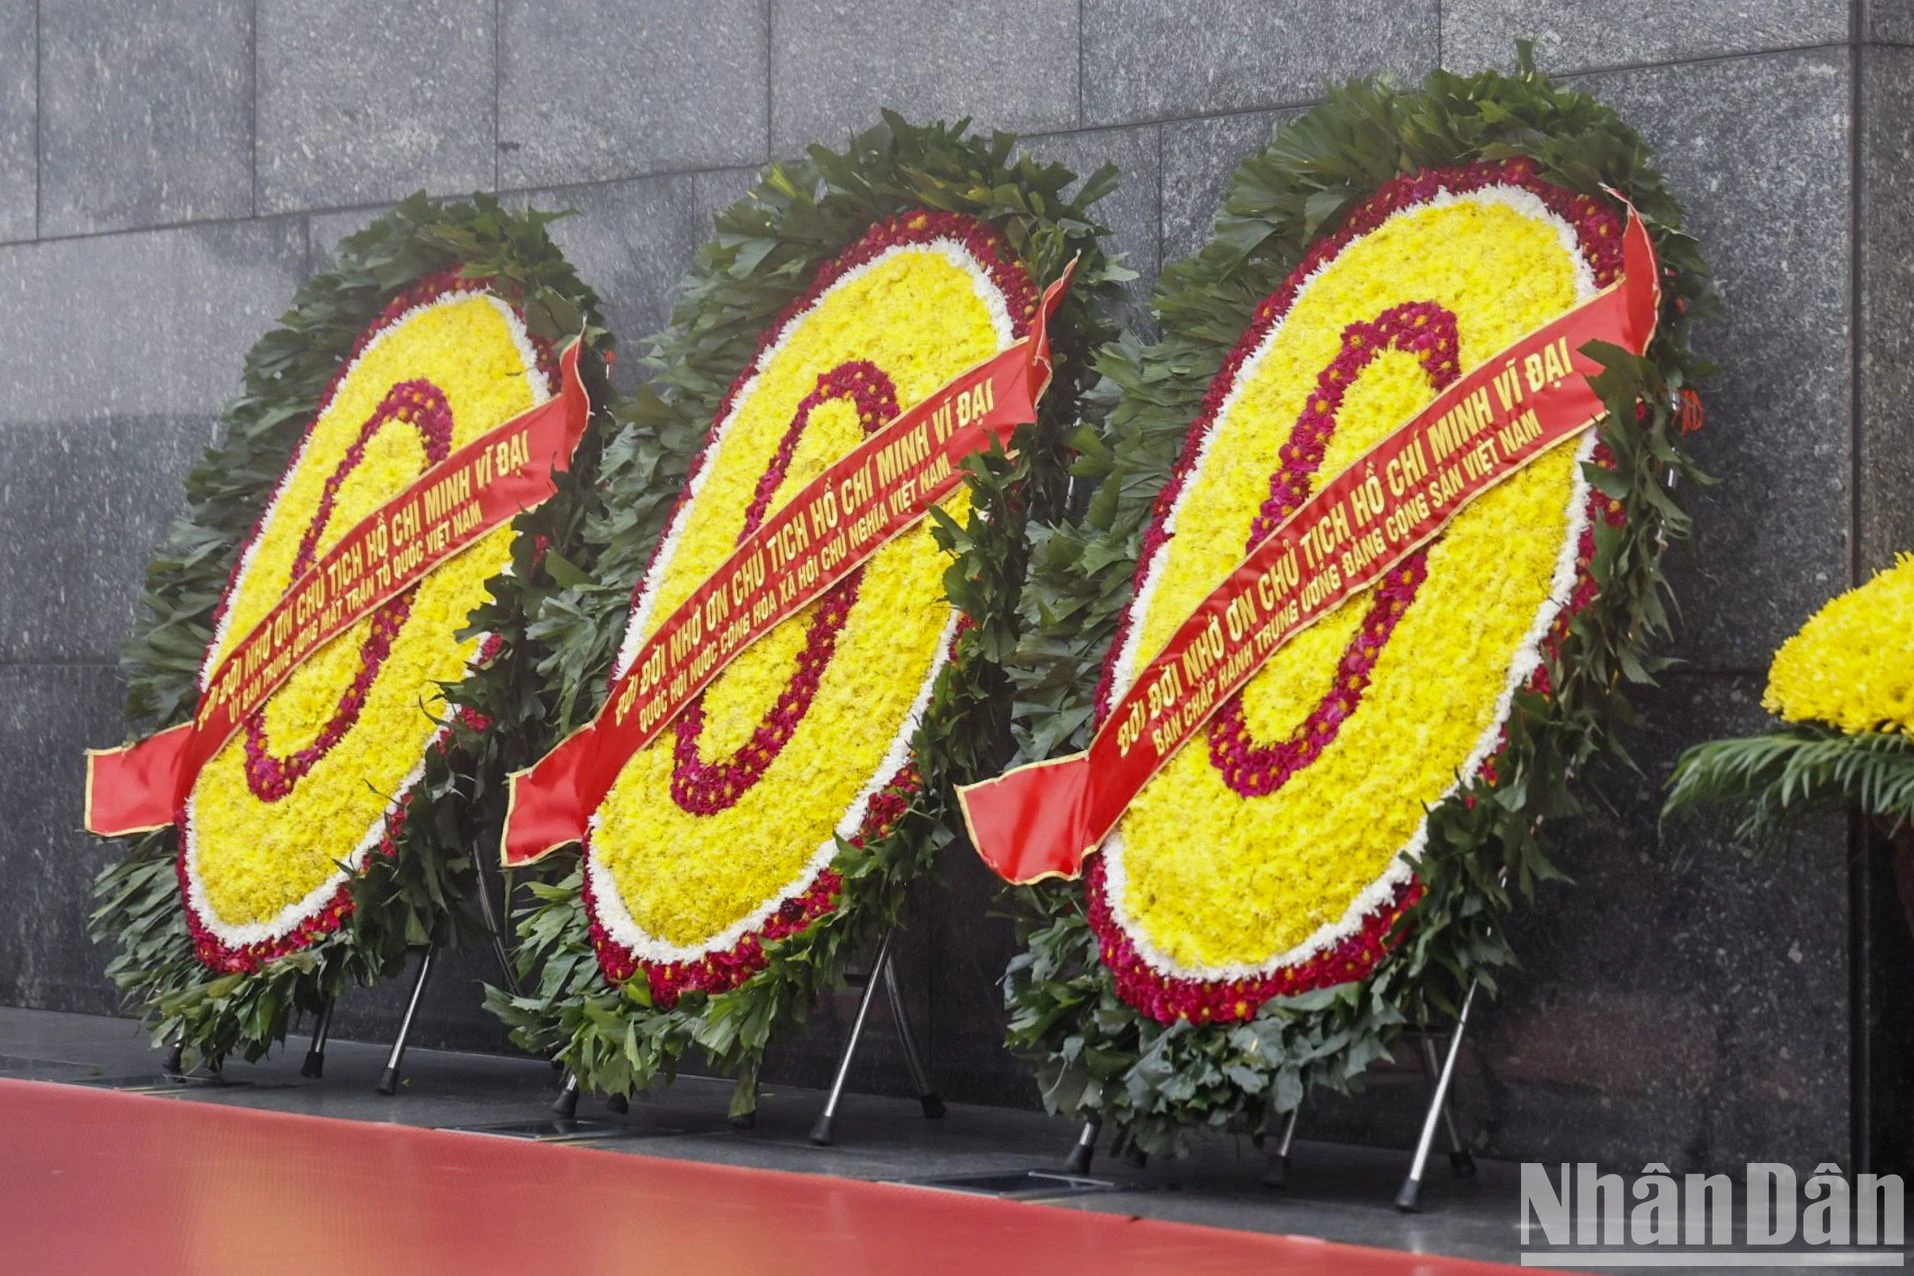 Lãnh đạo Đảng, Nhà nước đặt vòng hoa và vào Lăng viếng Chủ tịch Hồ Chí Minh- Ảnh 2.